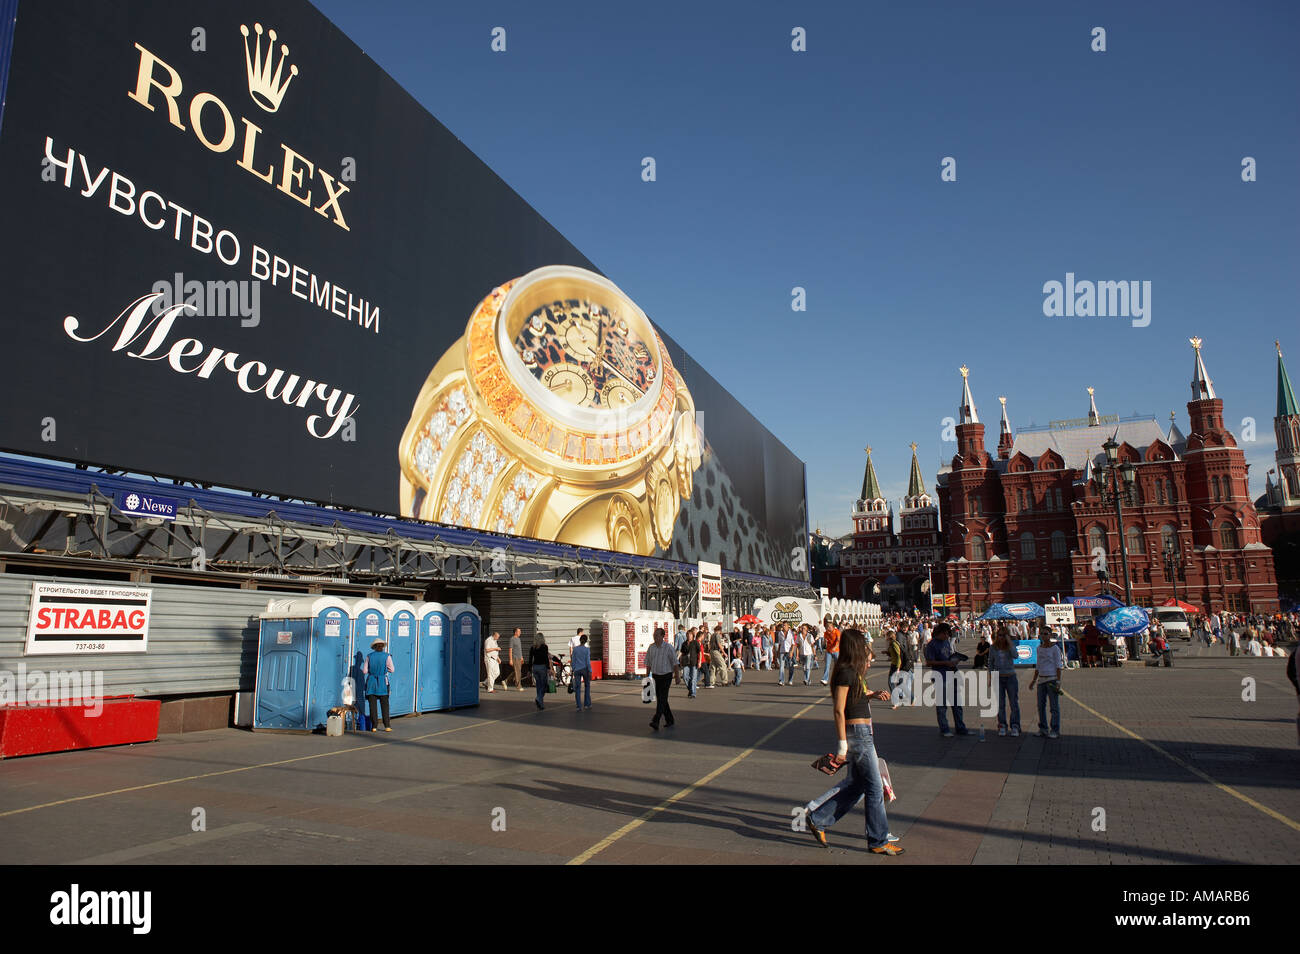 Grande orologio Rolex pubblicità e la folla in Manezhnaya Square Mosca Russia Foto Stock